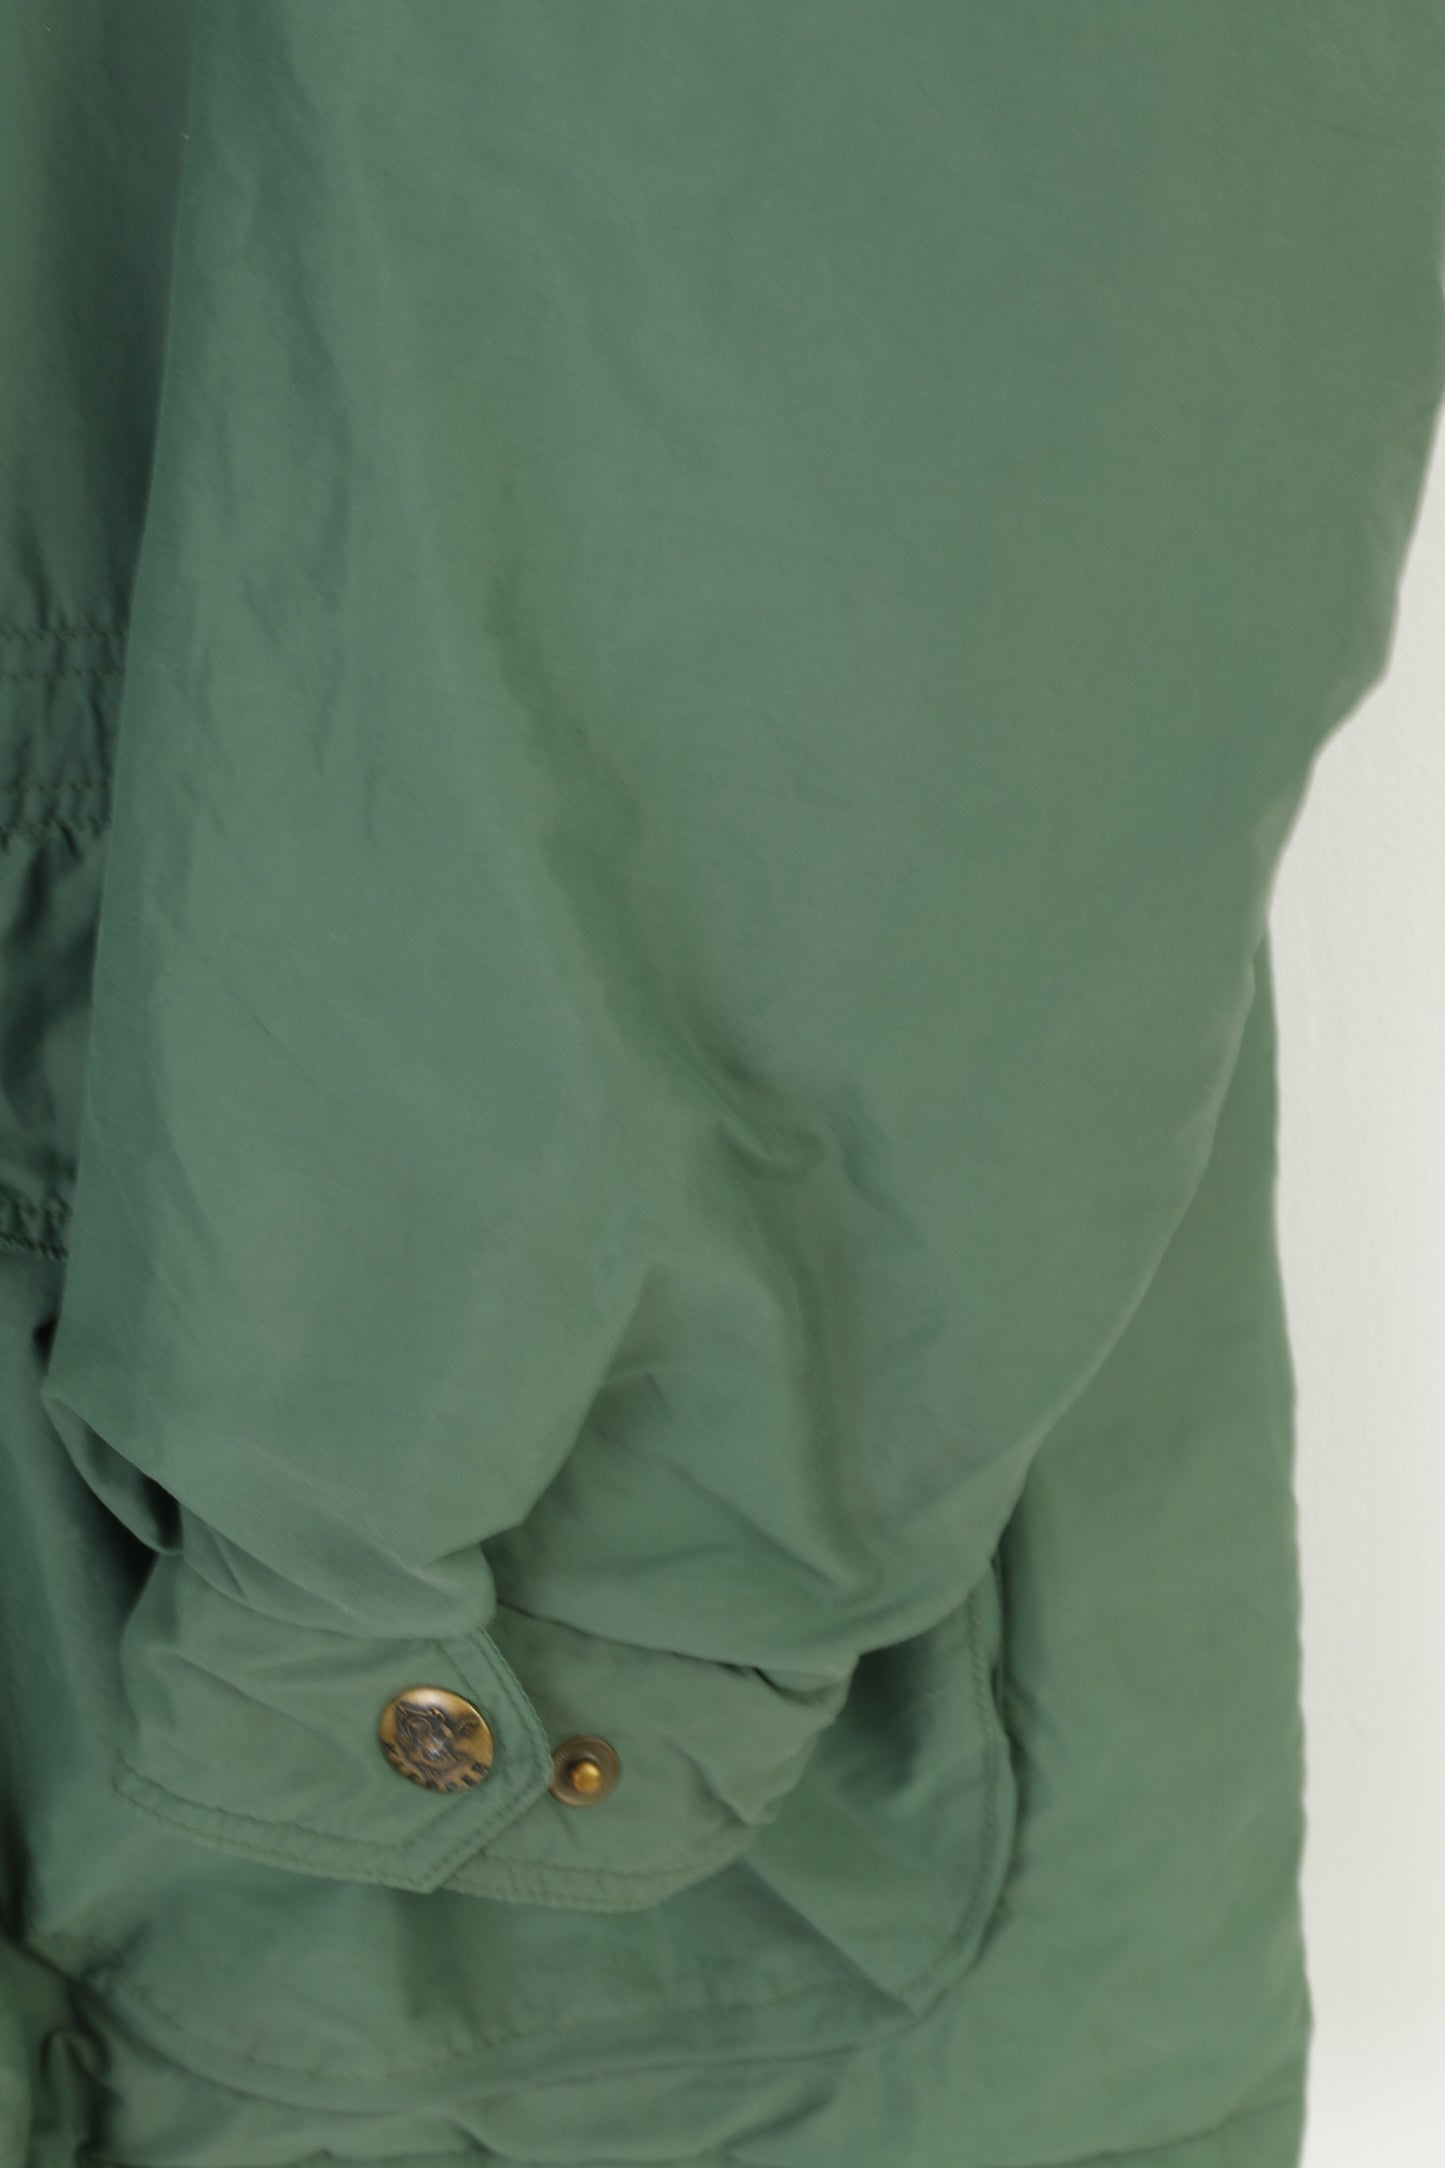 Klepper Men 54 Jacket Green Full Zipper Pockets Nylon Walking Sportswear Vintage Top